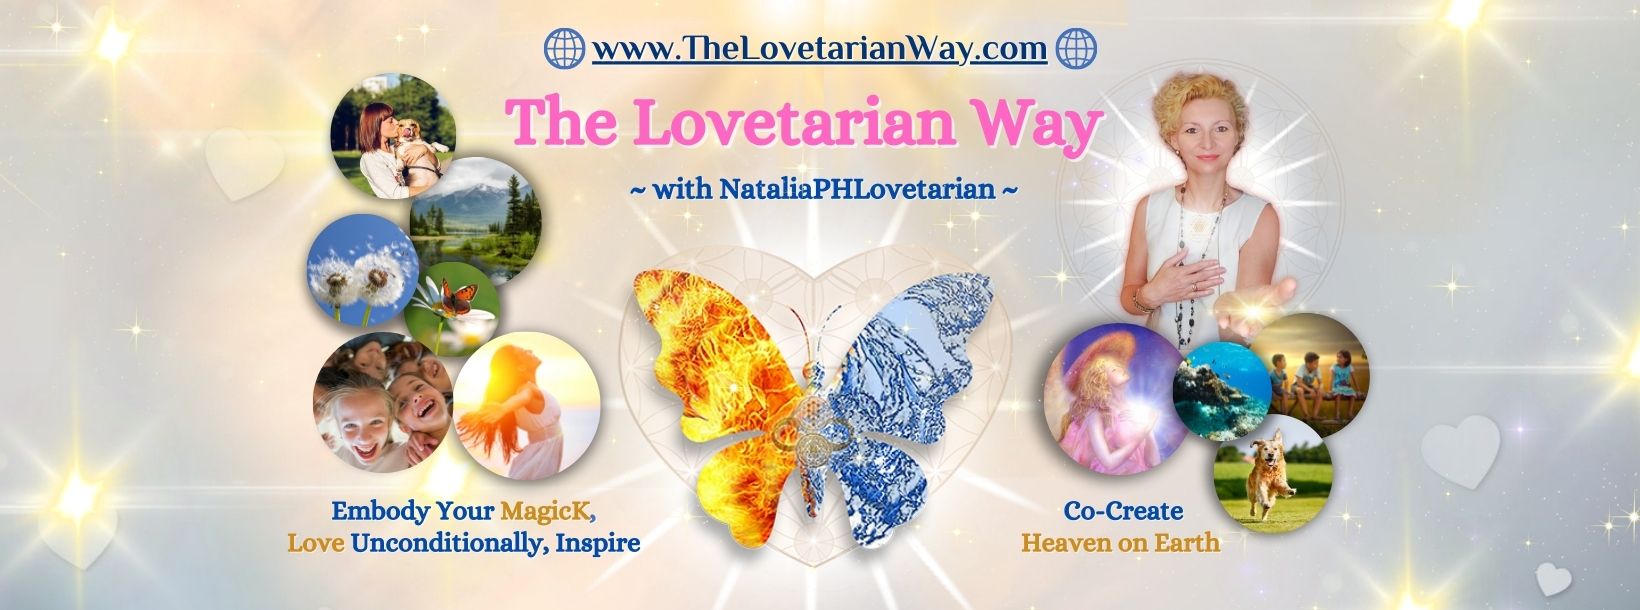 The Lovetarian Way Group